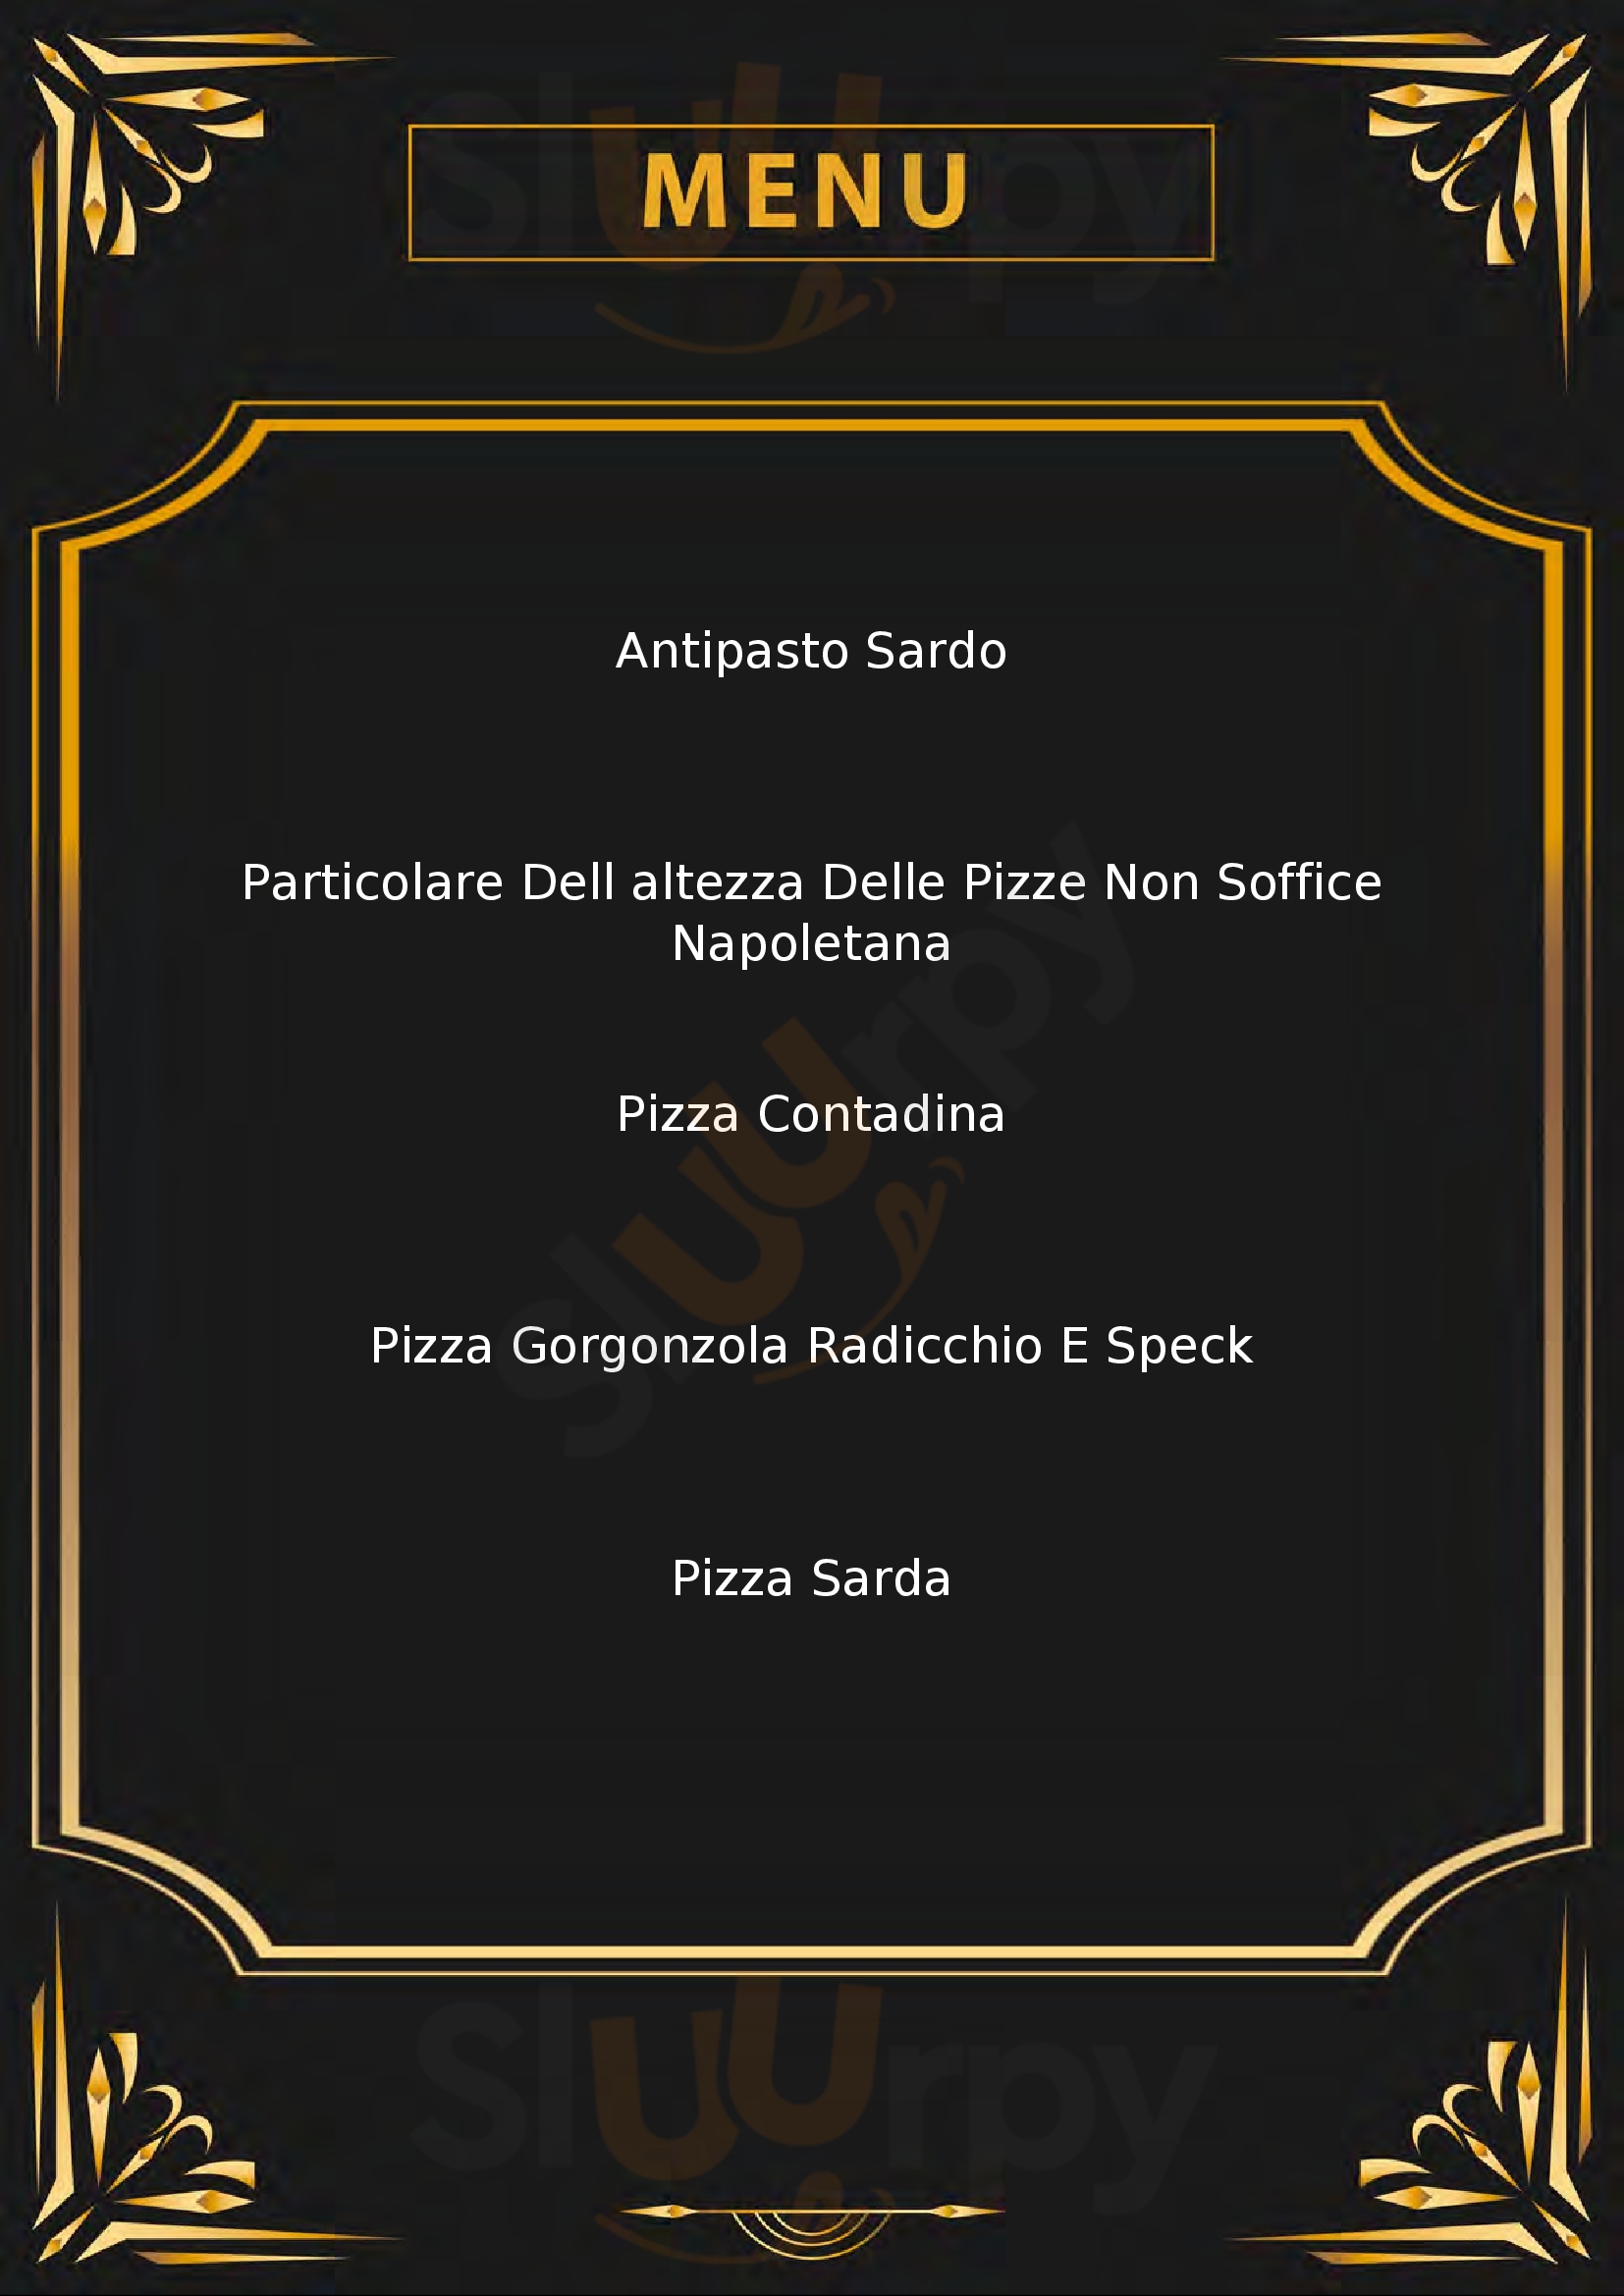 Ristorante Pizzeria La Fonte Pizza & Griglia Tempio Pausania menù 1 pagina